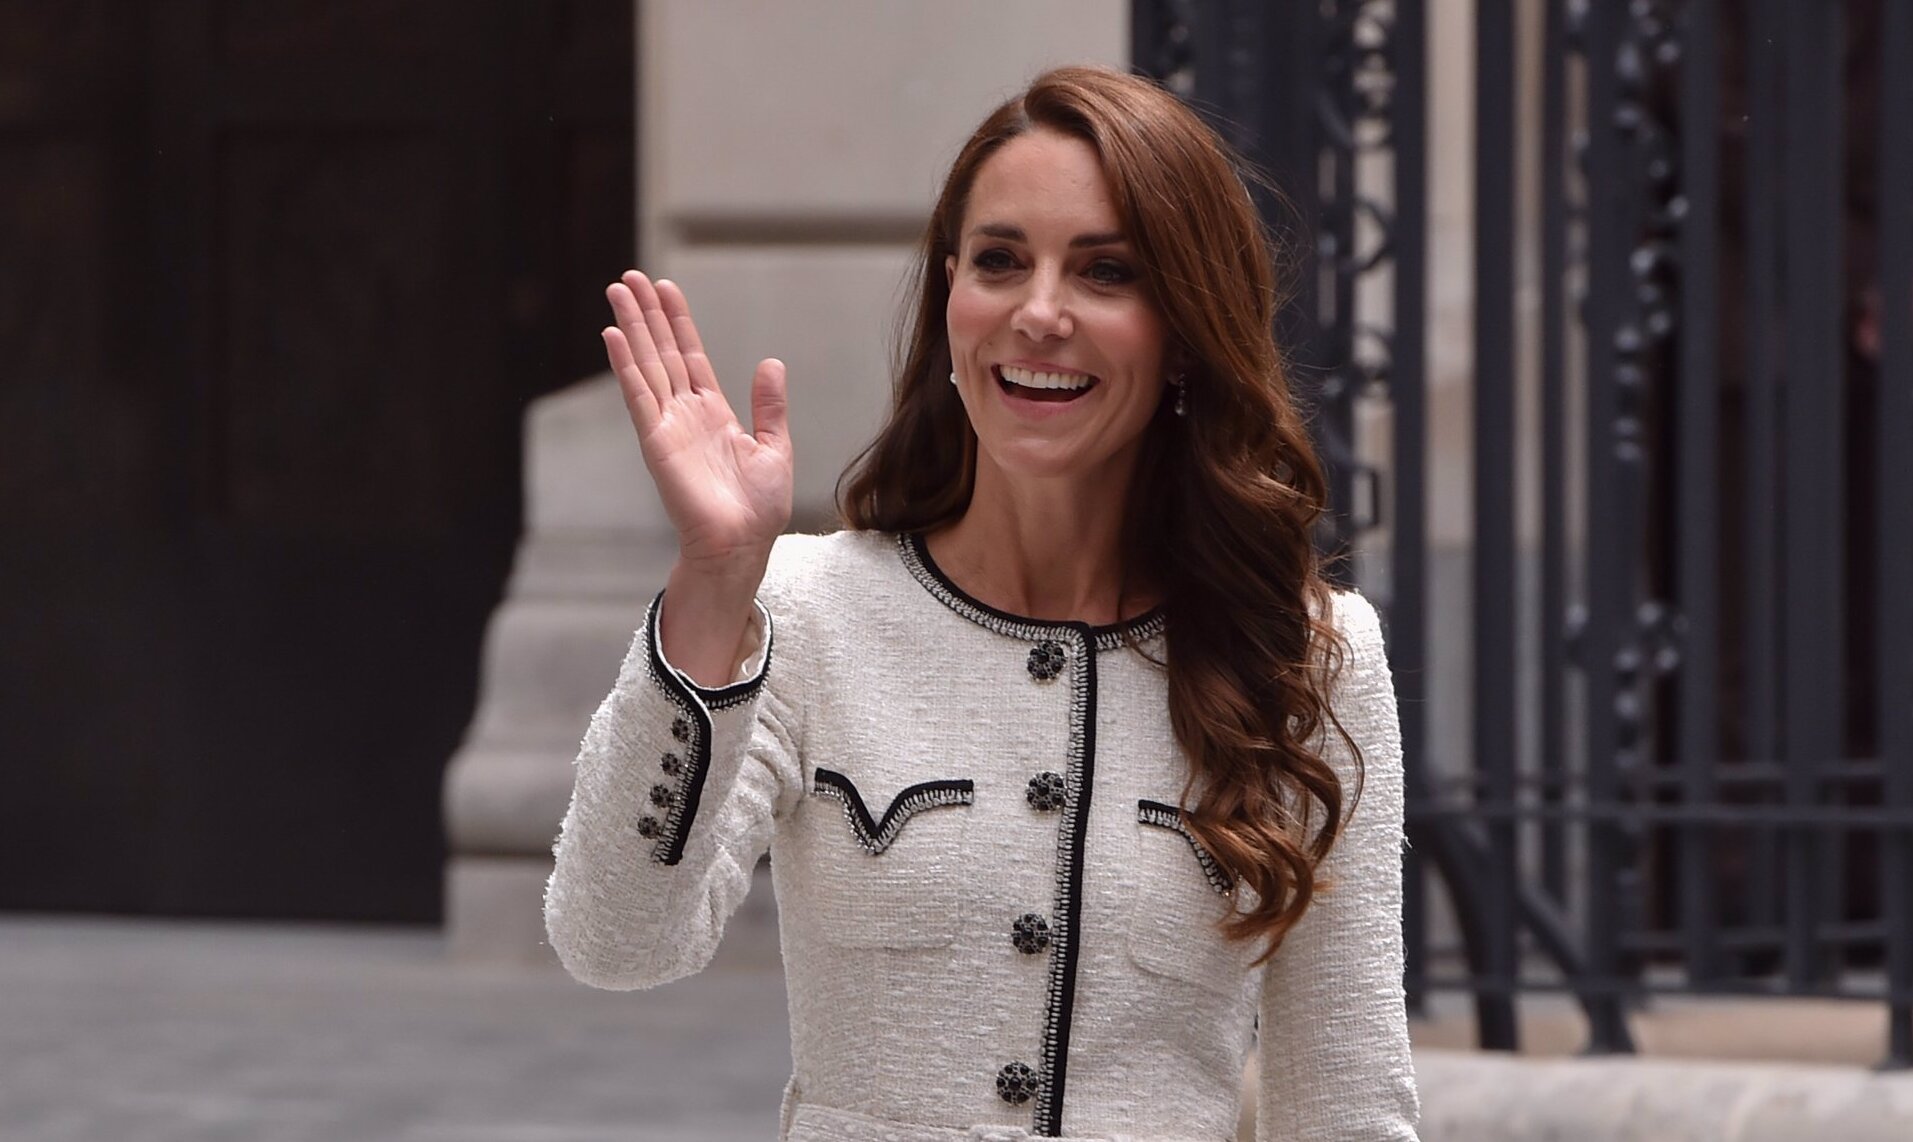 El rey Carlos III, el príncipe Harry o Meghan Markle: todas las reacciones al comunicado de Kate Middleton